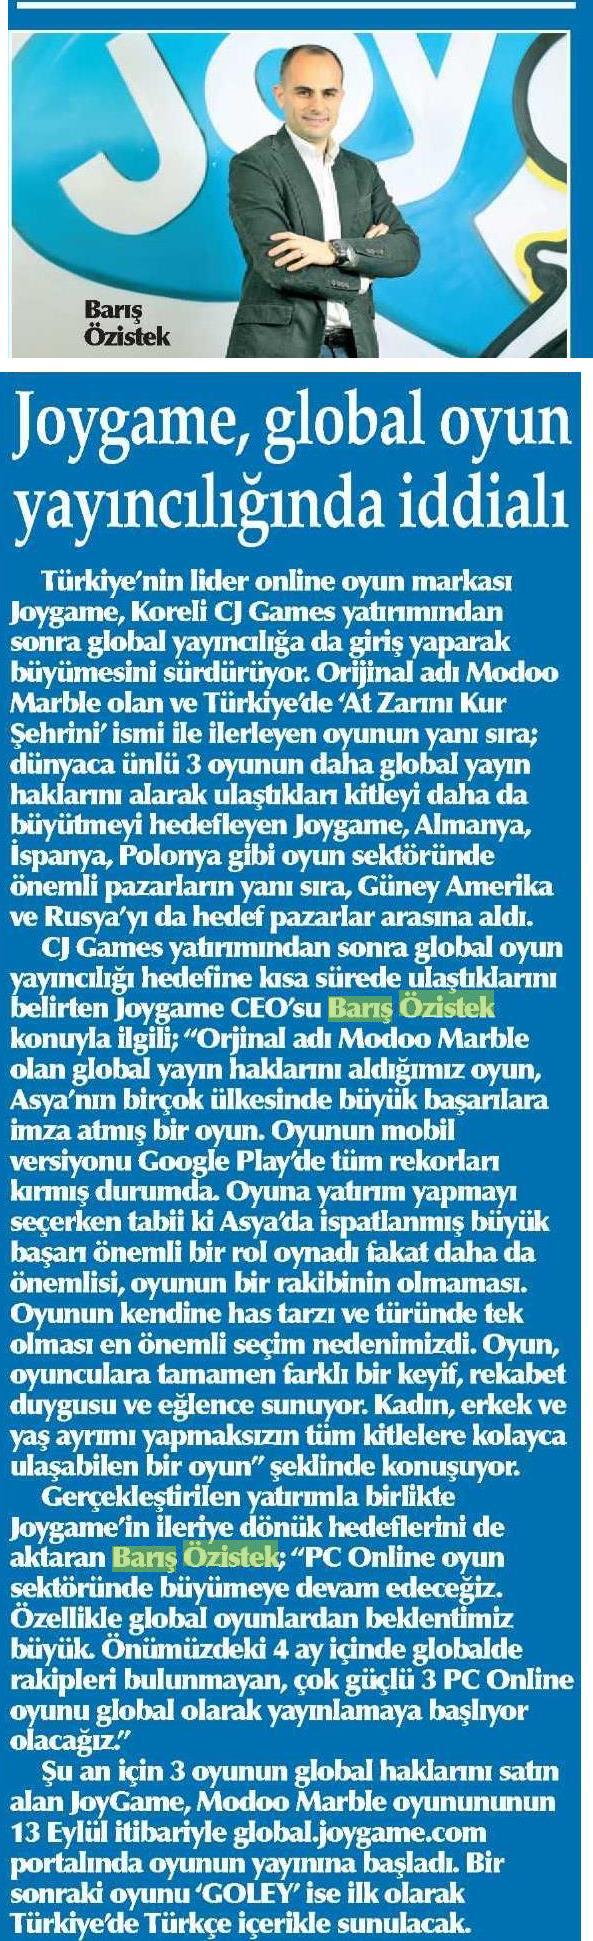 Netmarble-Turkey-Yenigun-Gazetesi-Sayfa-7-6-Aralik-2013